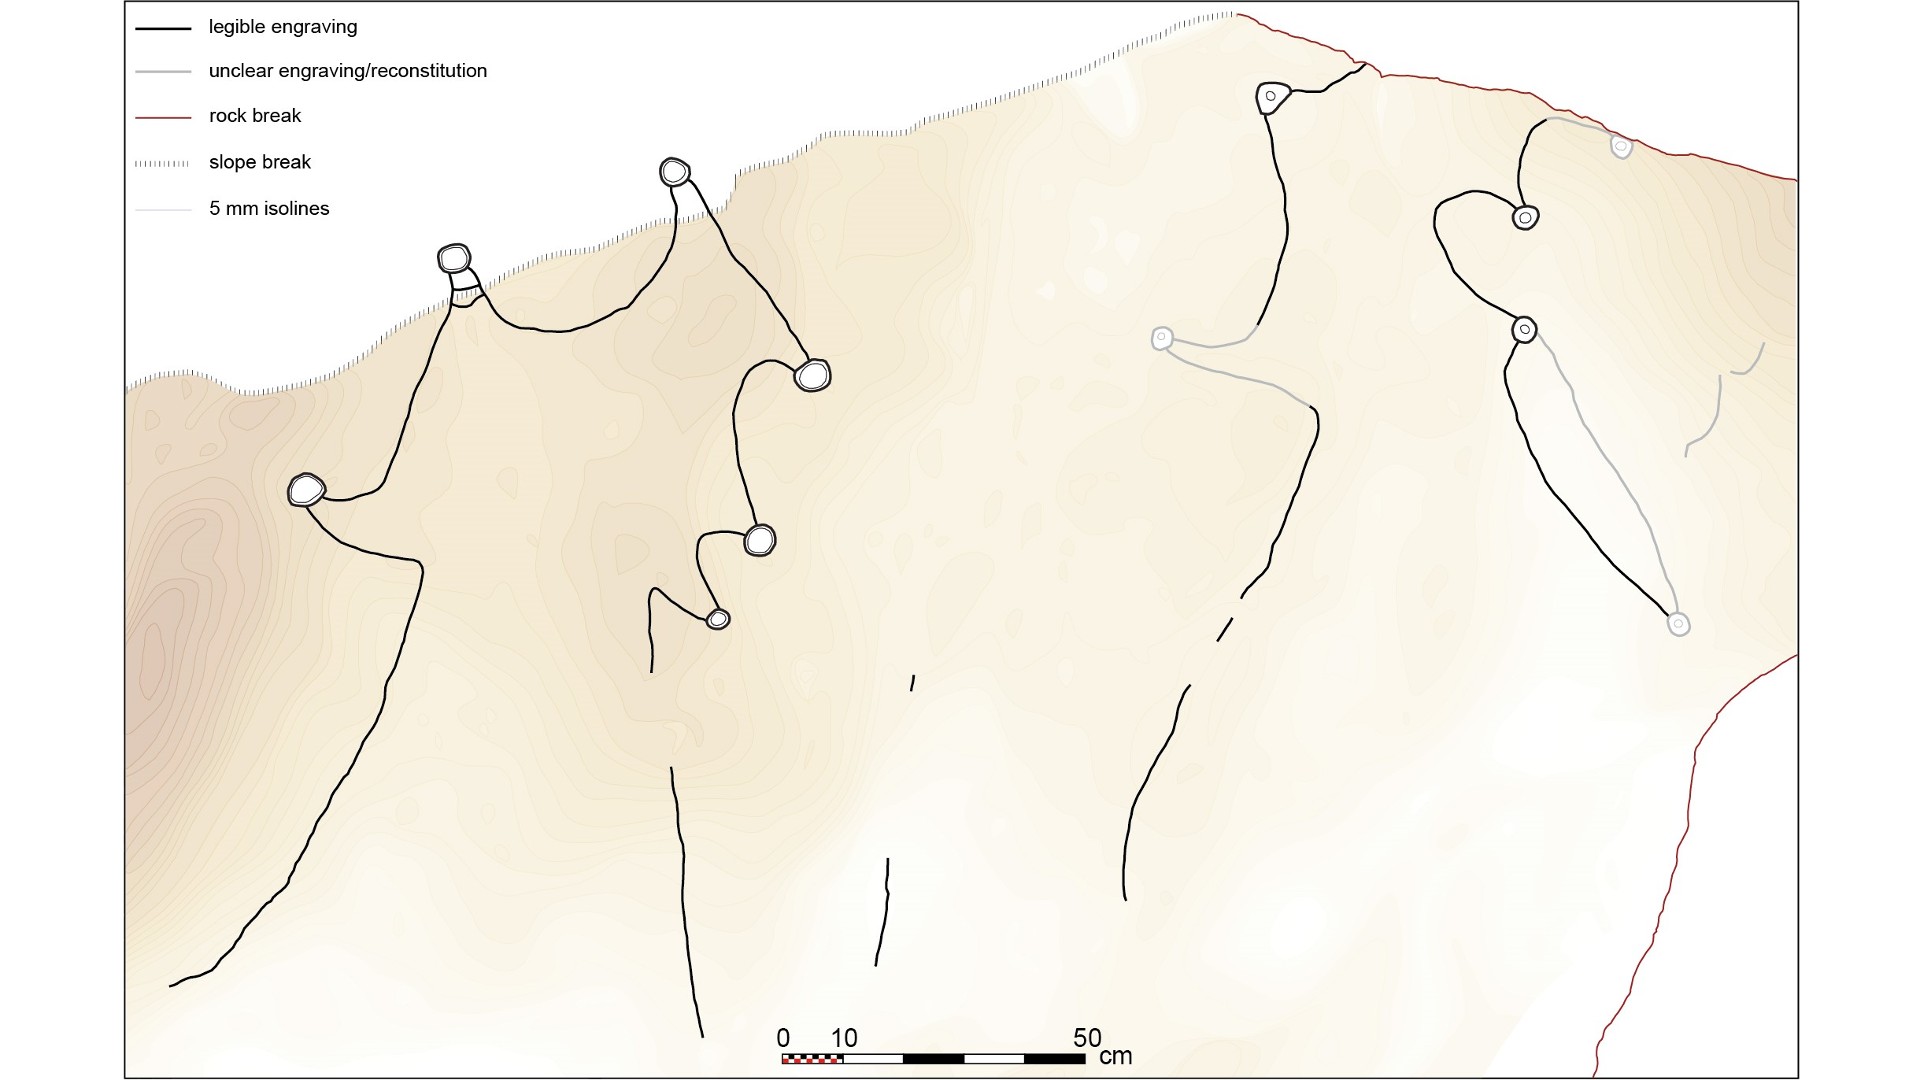 ಅರೇಬಿಯಾದಲ್ಲಿನ 8,000 ವರ್ಷಗಳಷ್ಟು ಹಳೆಯದಾದ ಕಲ್ಲಿನ ಕೆತ್ತನೆಗಳು ಪ್ರಪಂಚದ ಅತ್ಯಂತ ಹಳೆಯ ಮೆಗಾಸ್ಟ್ರಕ್ಚರ್ ಬ್ಲೂಪ್ರಿಂಟ್ ಆಗಿರಬಹುದು 4